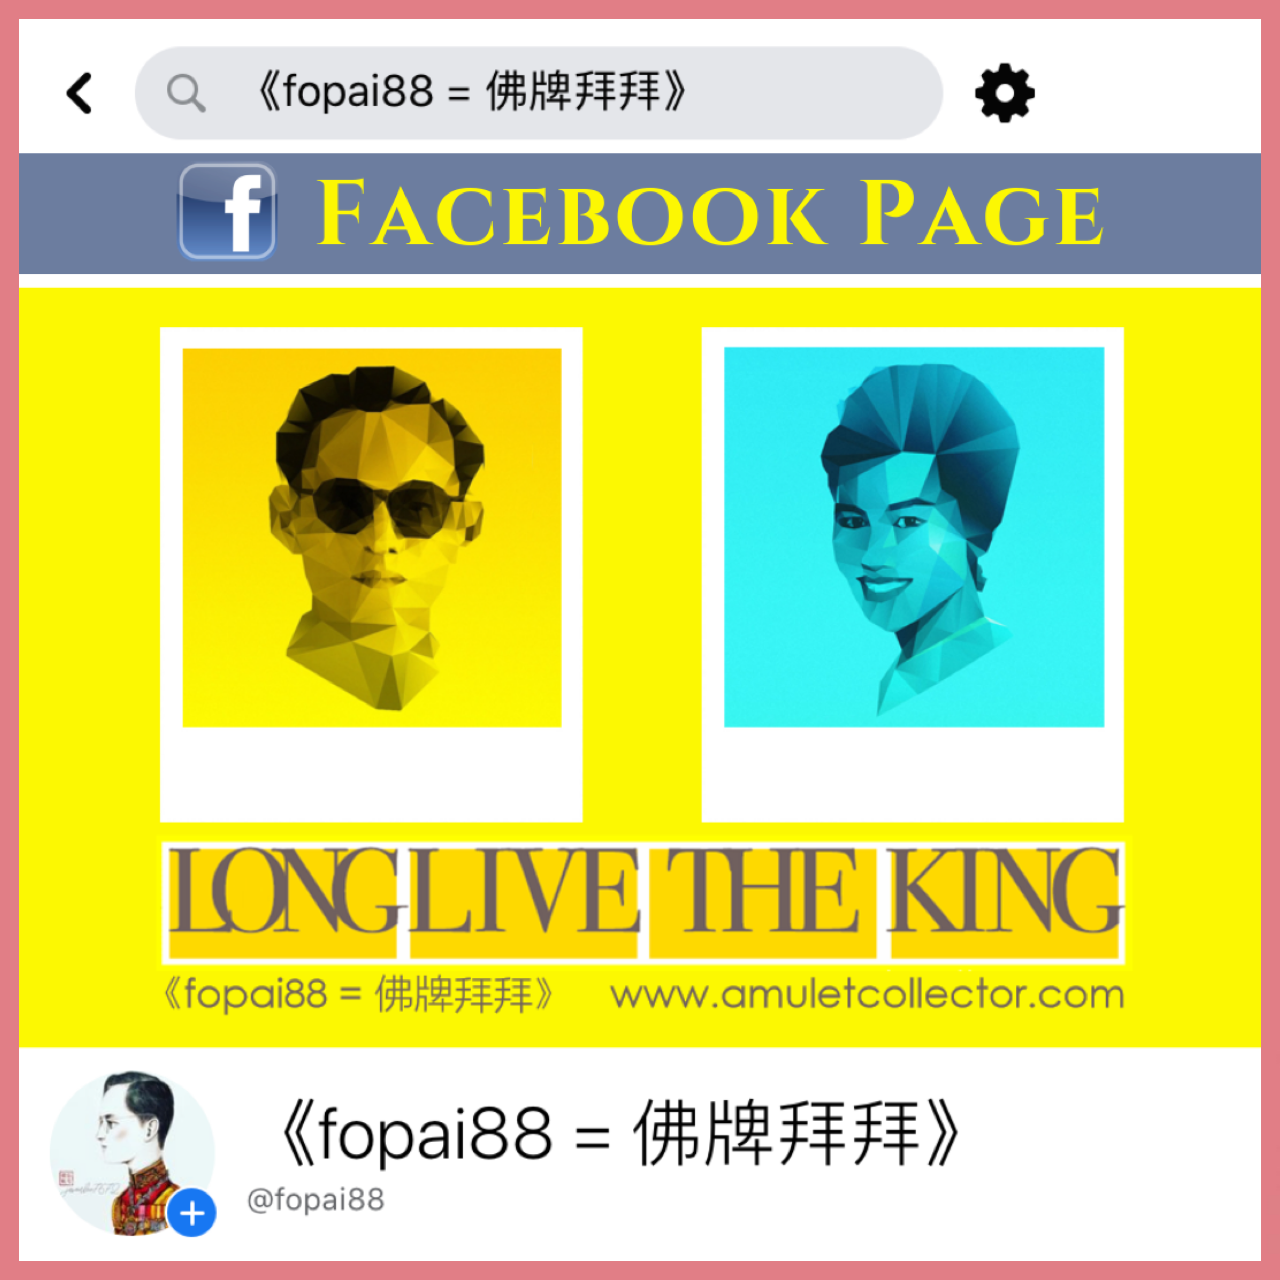 脸书专页： 《fopai88 = 佛牌拜拜》